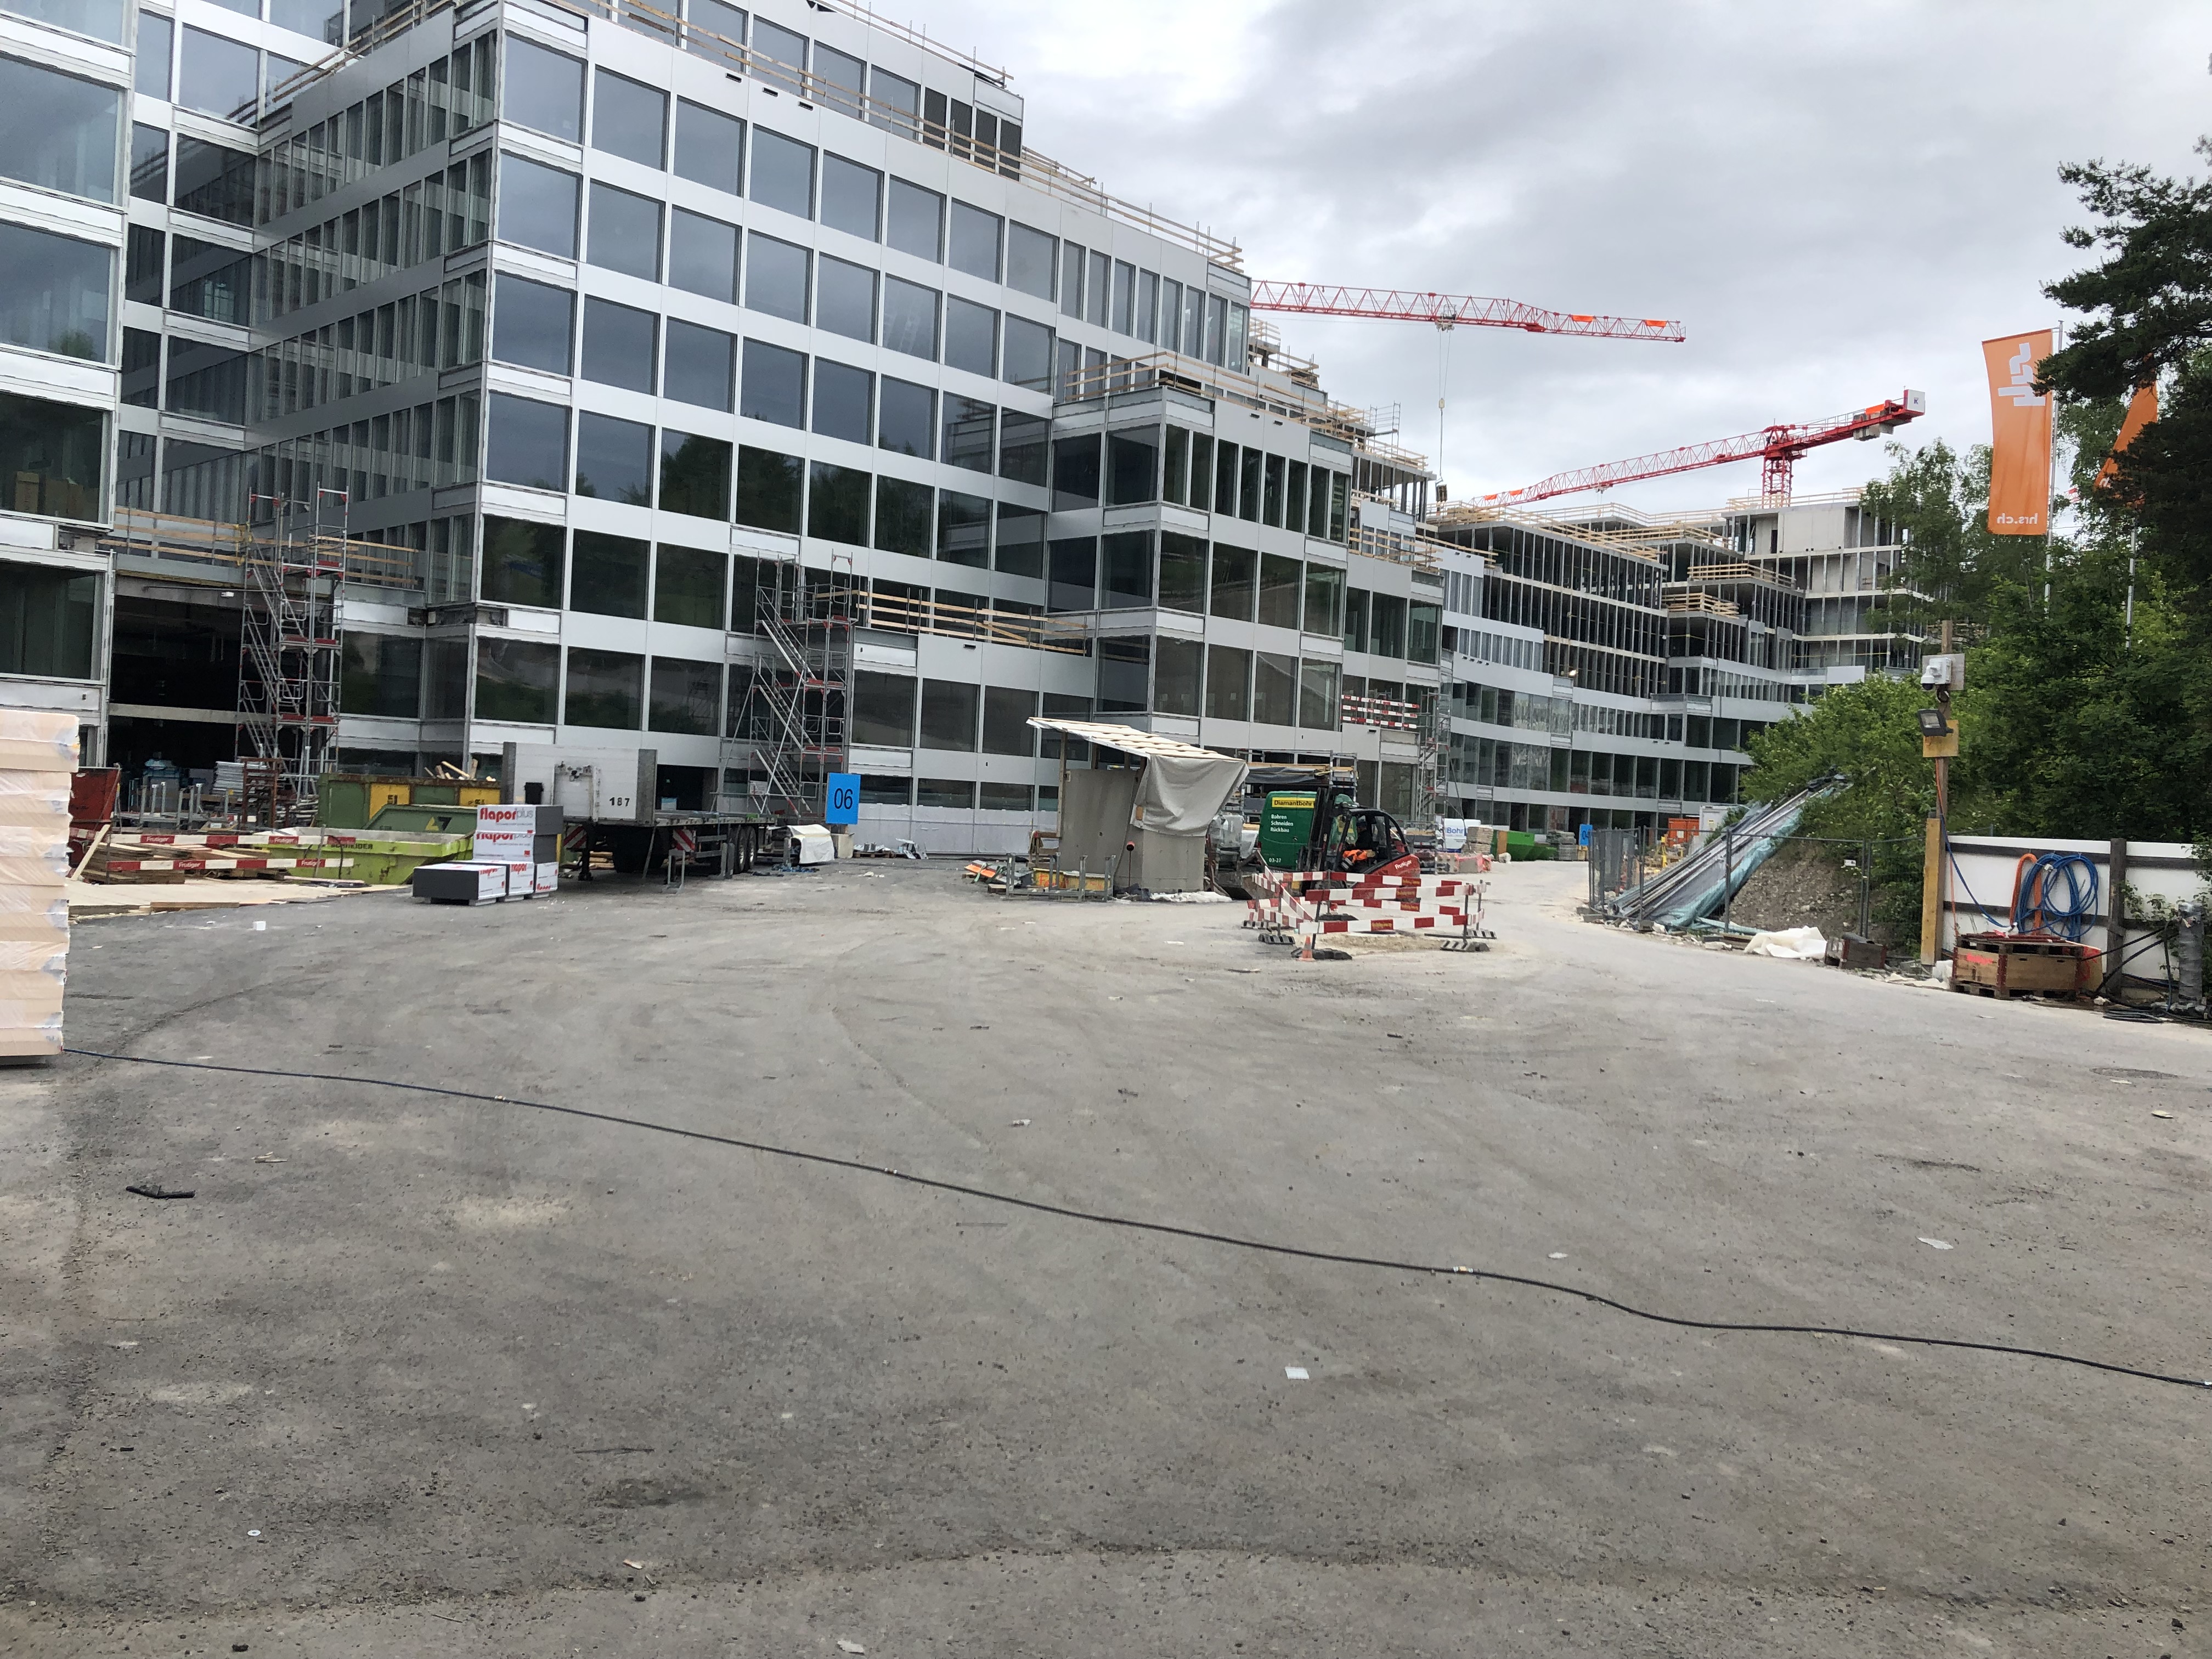 The Circle- Baustelle in der Schweiz und medifa mitten drin